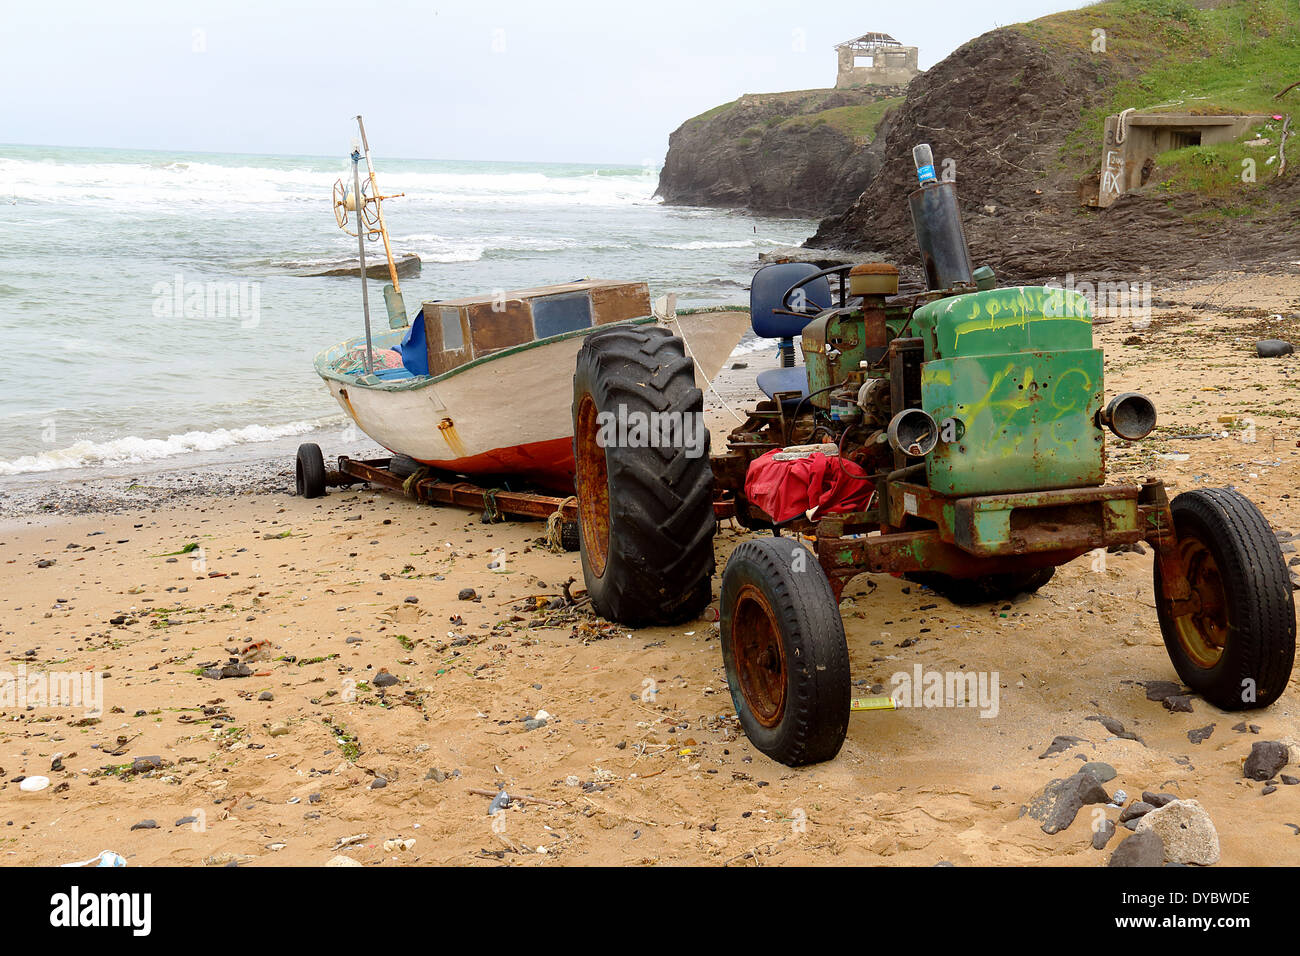 Immagine di un trattore arrugginito con una barca sul rimorchio Foto Stock